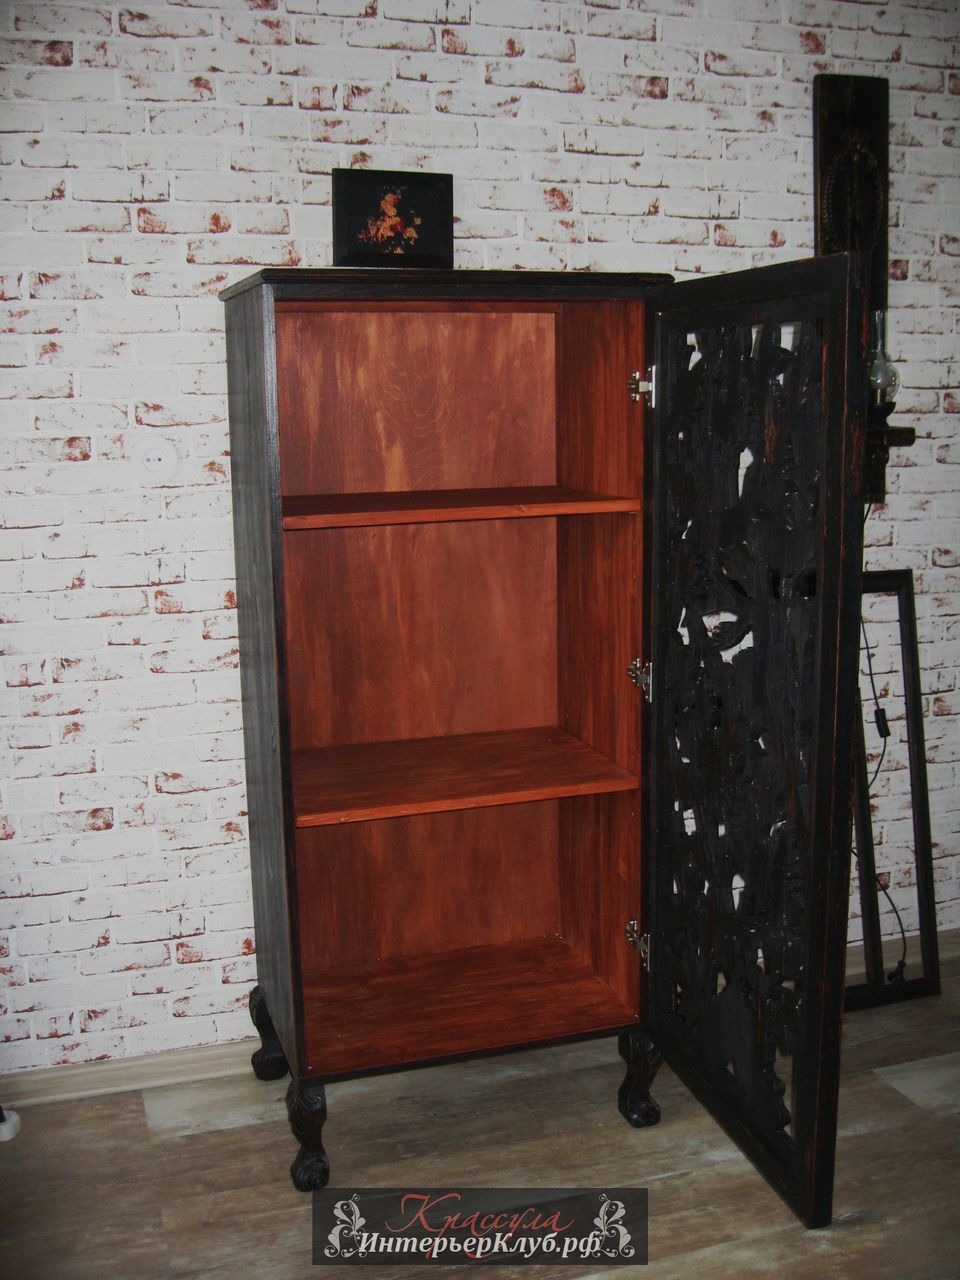 45 Шкаф-комод с резным фасадом Птицы - материал сосна, камфорное дерево, цвет черно - коричневый, искусственное старение